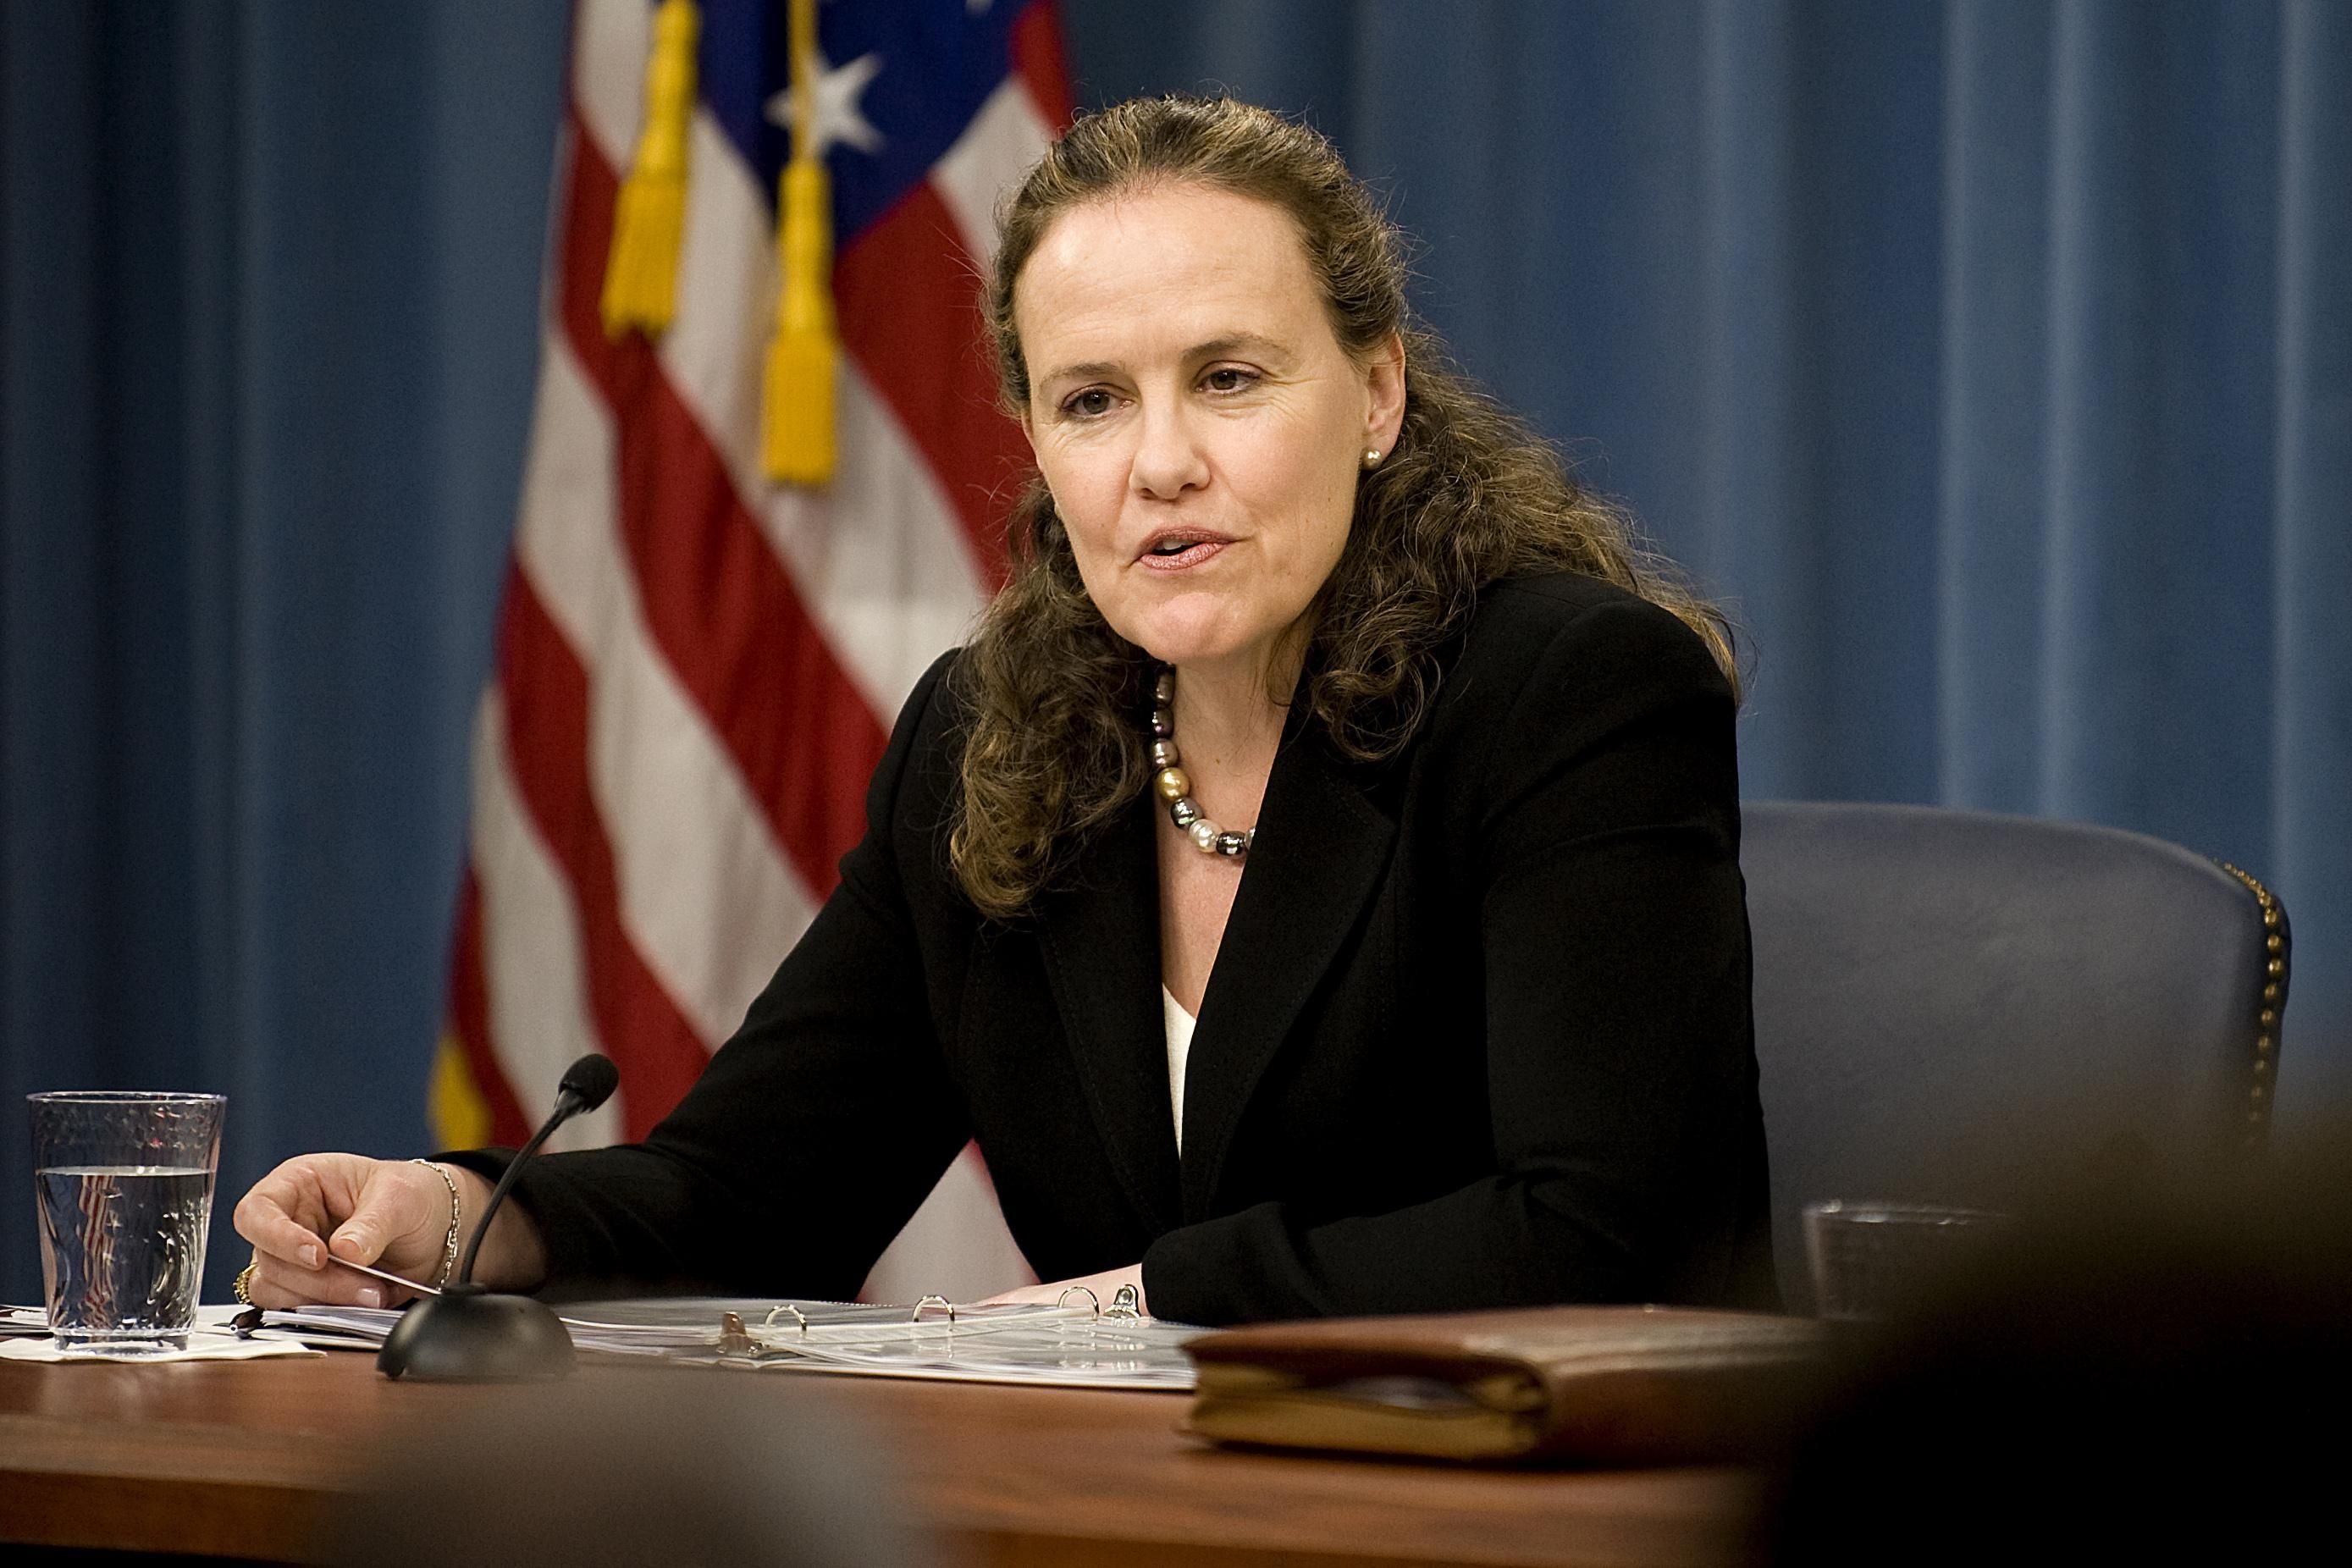 Претенденты на должности в США: Пентагон может возглавить женщина